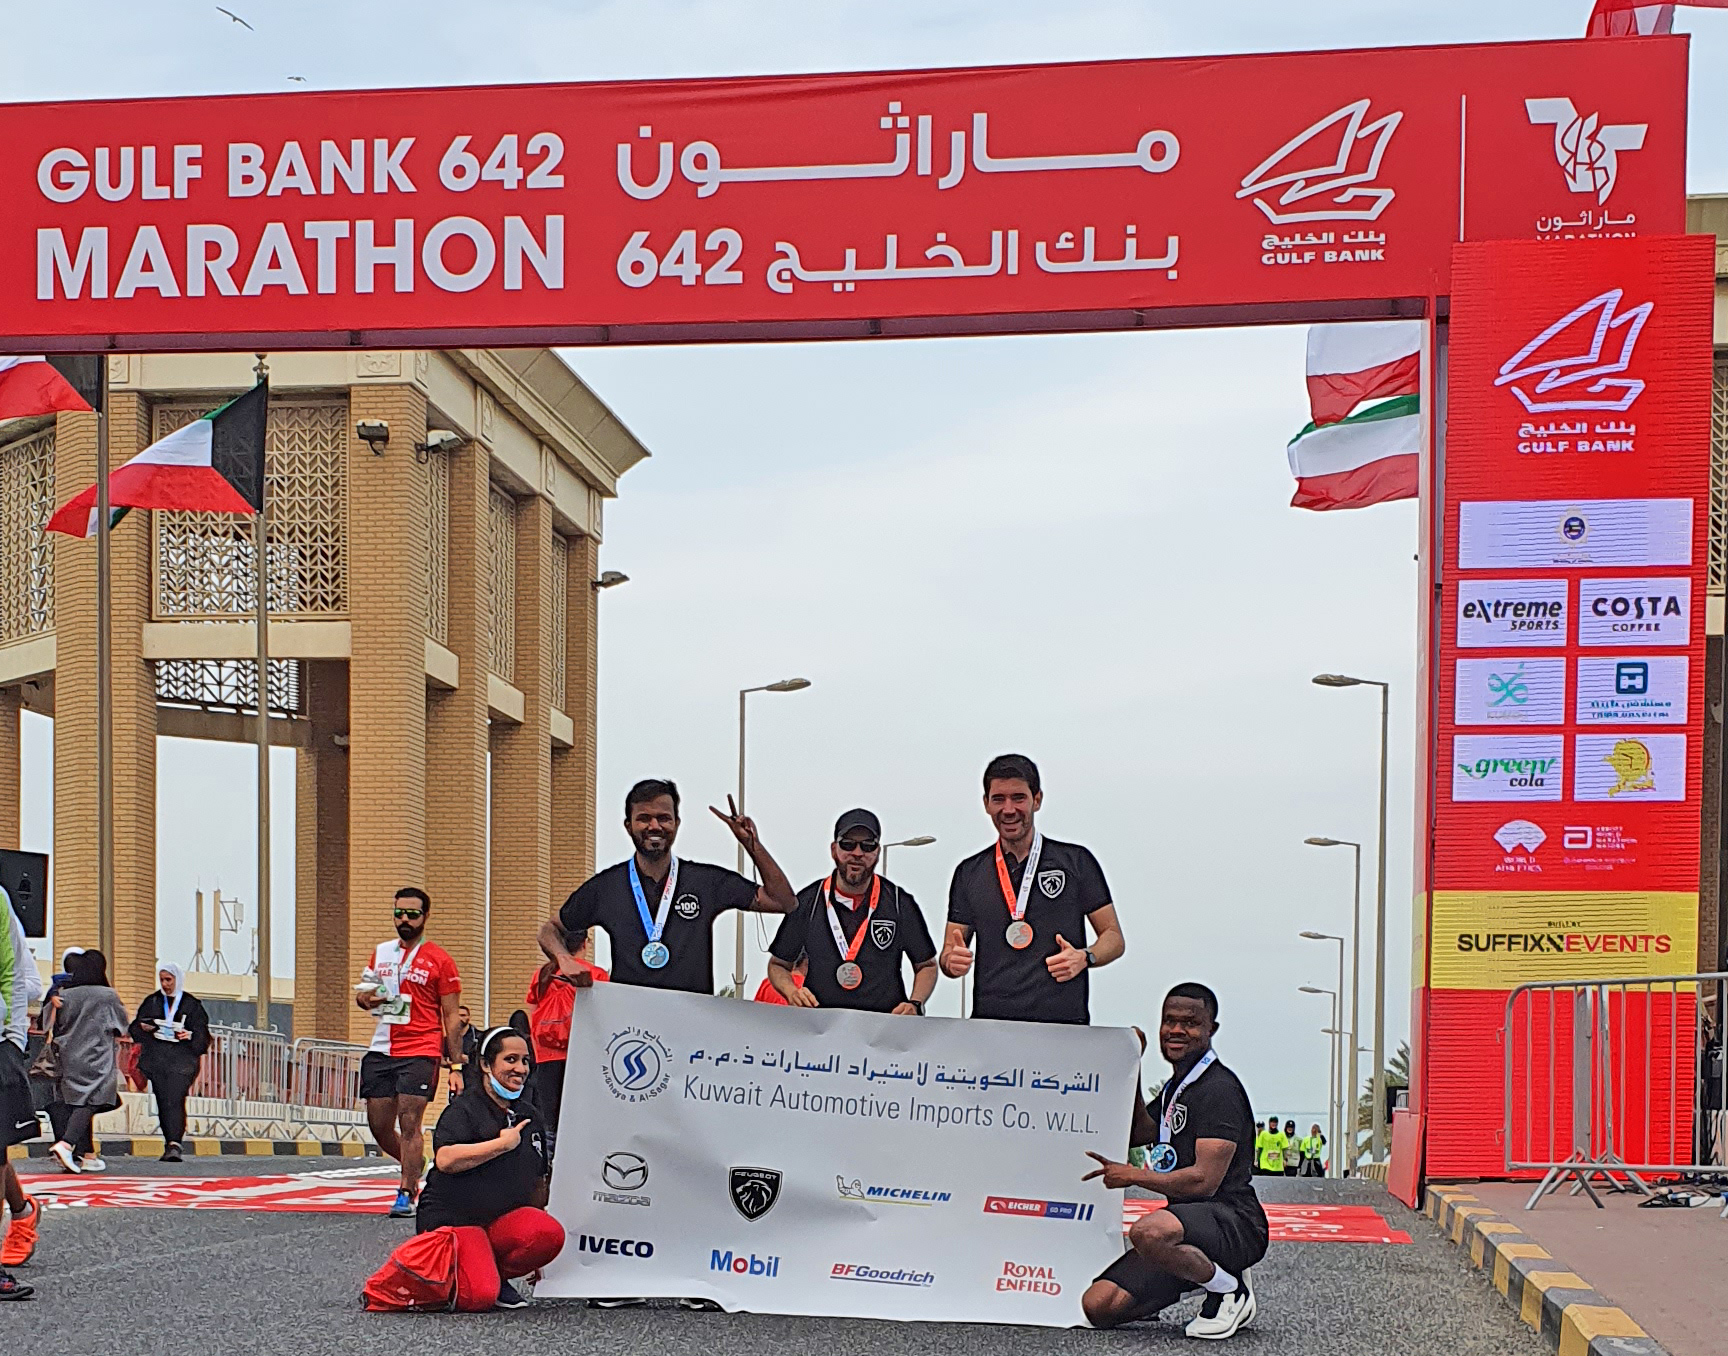 KAICO team’s heroes were present in Gulf Bank 642 Marathon